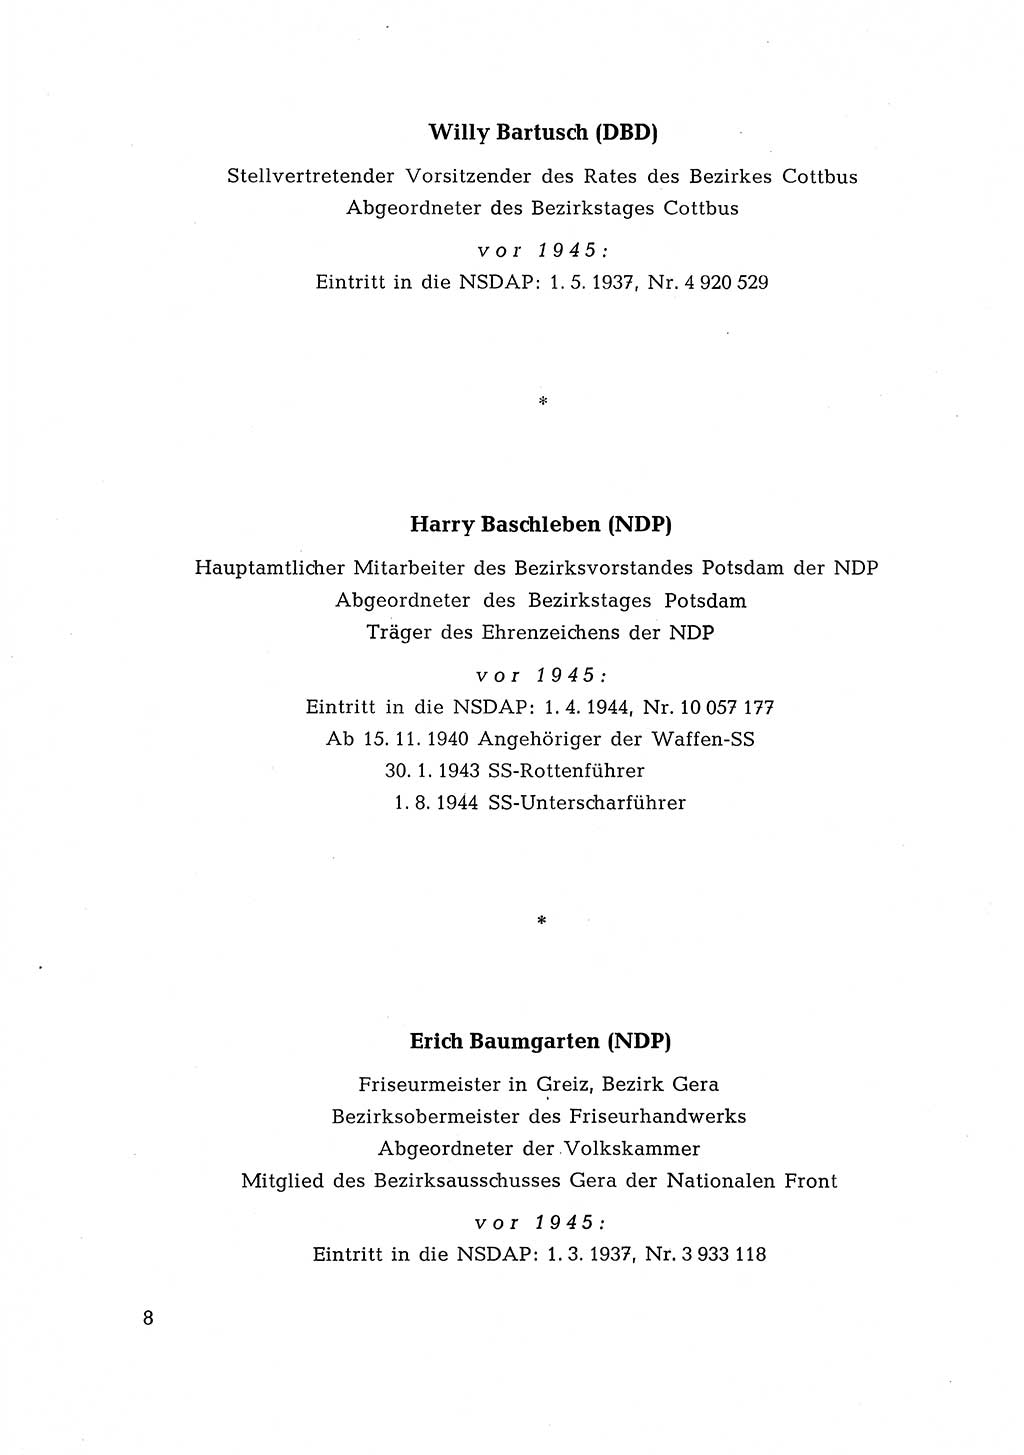 Ehemalige Nationalsozialisten in Pankows Diensten [Deutsche Demokratische Republik (DDR)] 1965, Seite 8 (Ehem. Nat.-Soz. DDR 1965, S. 8)